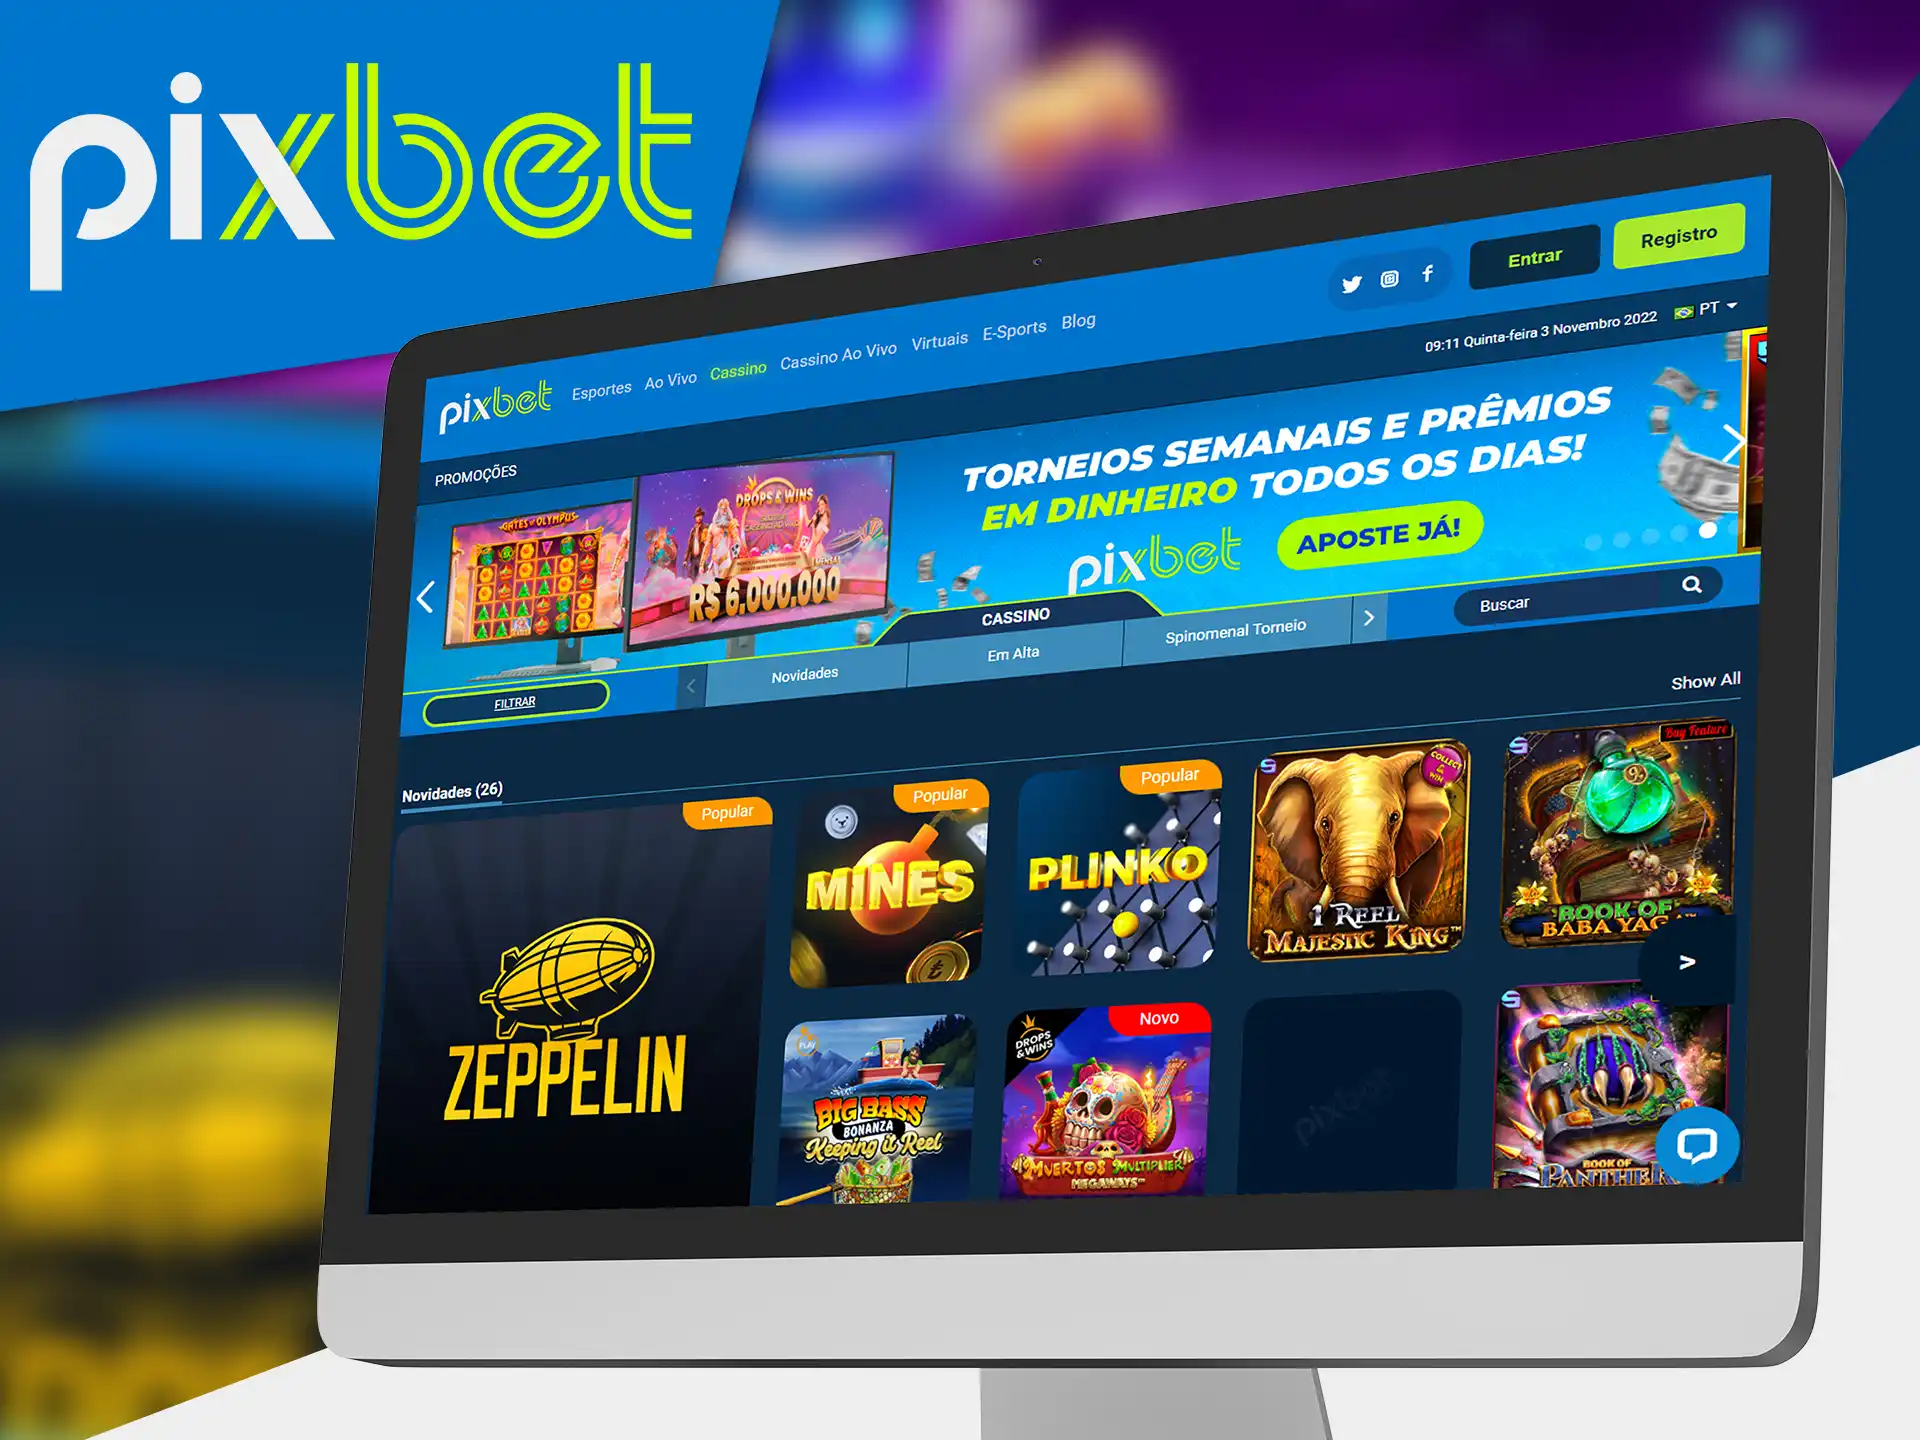 Aplikacja kasyna Pixbet